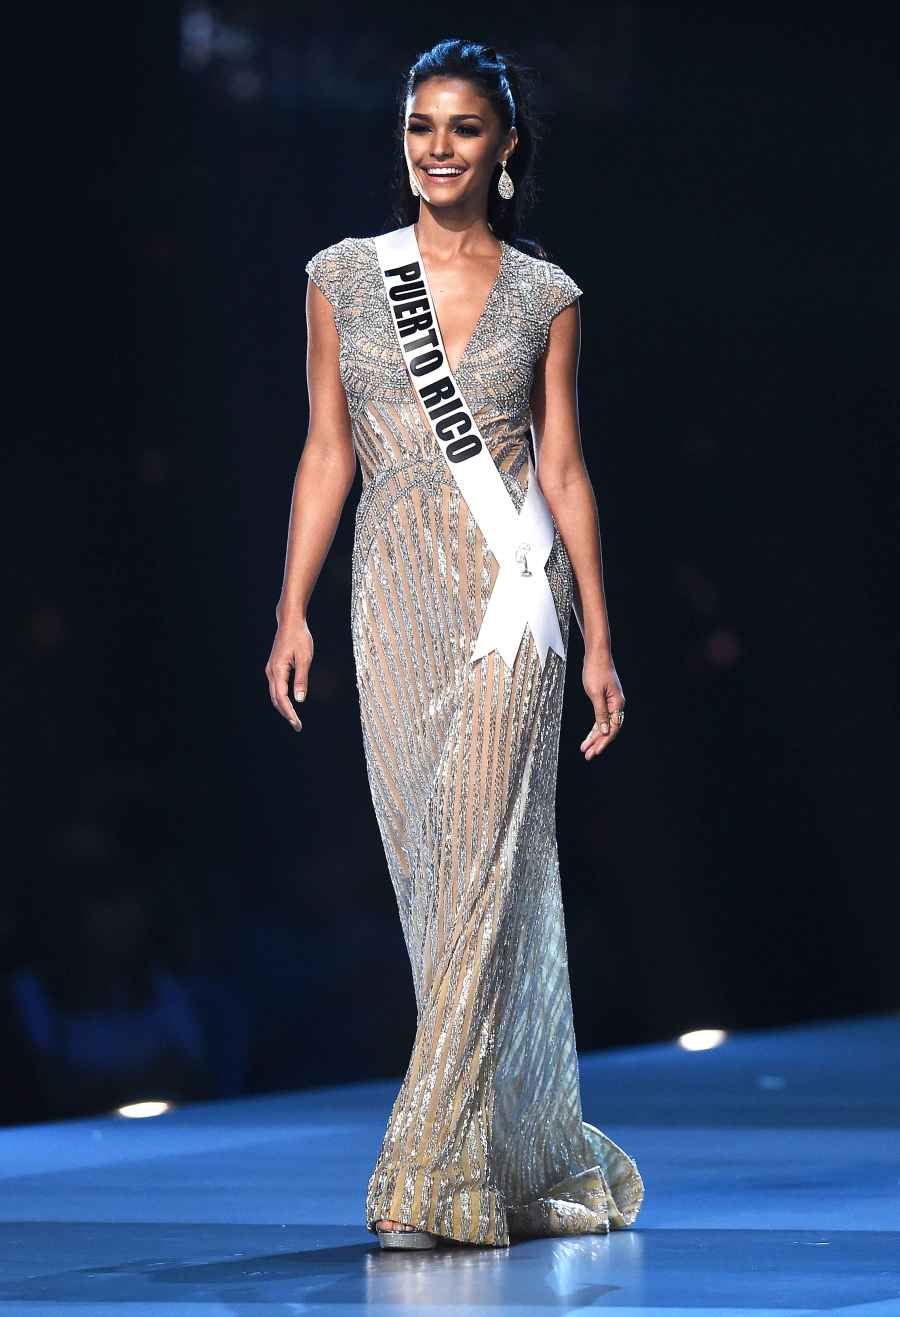 1-Miss-Puerto-Rico-Kiara-Ortega-miss-universe